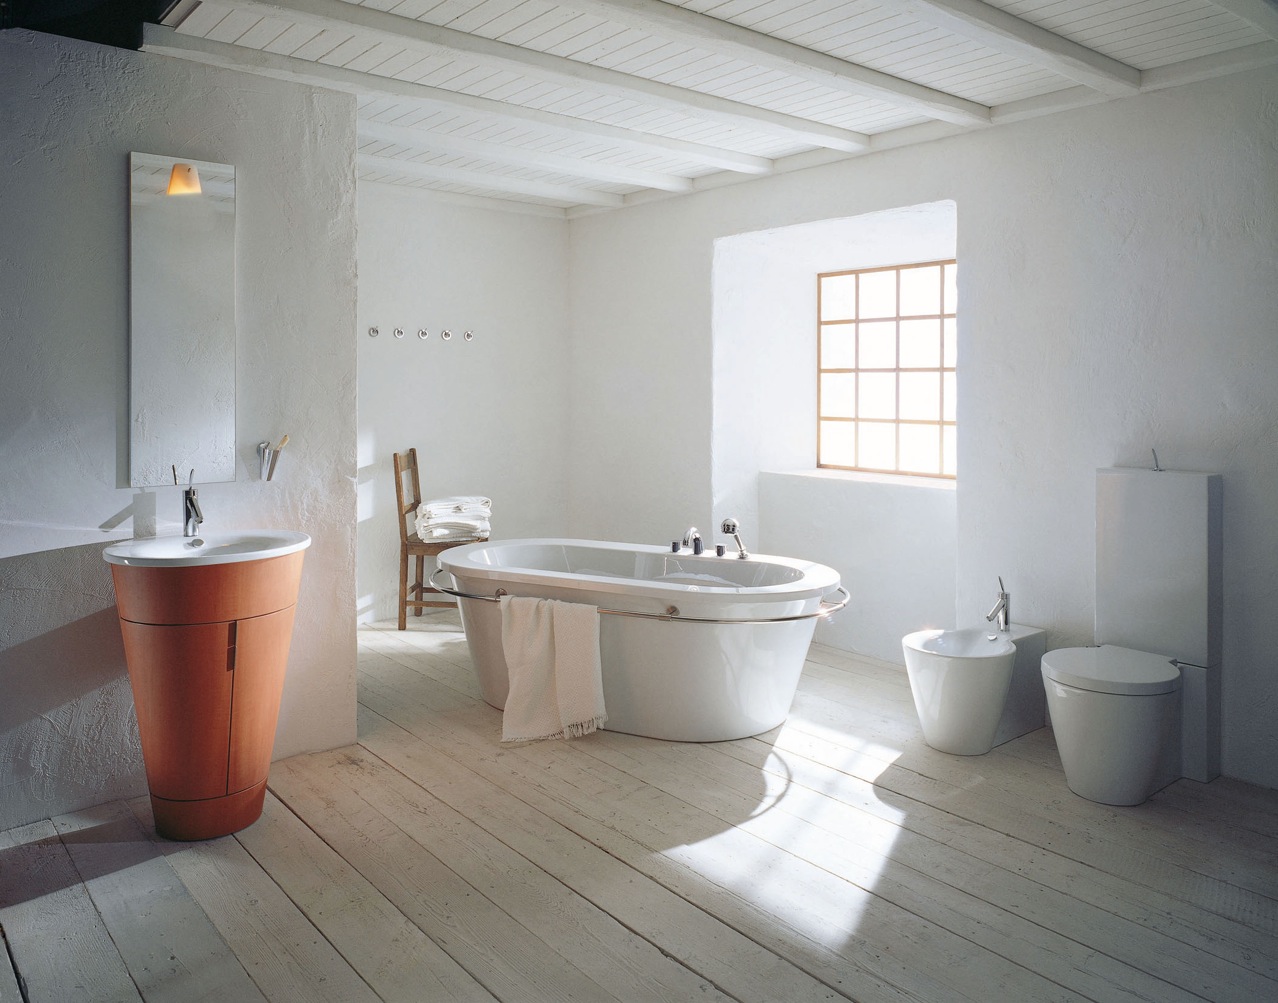 salle de bain pierre idée baignoire céramique moderne lavabo orange parquet sol